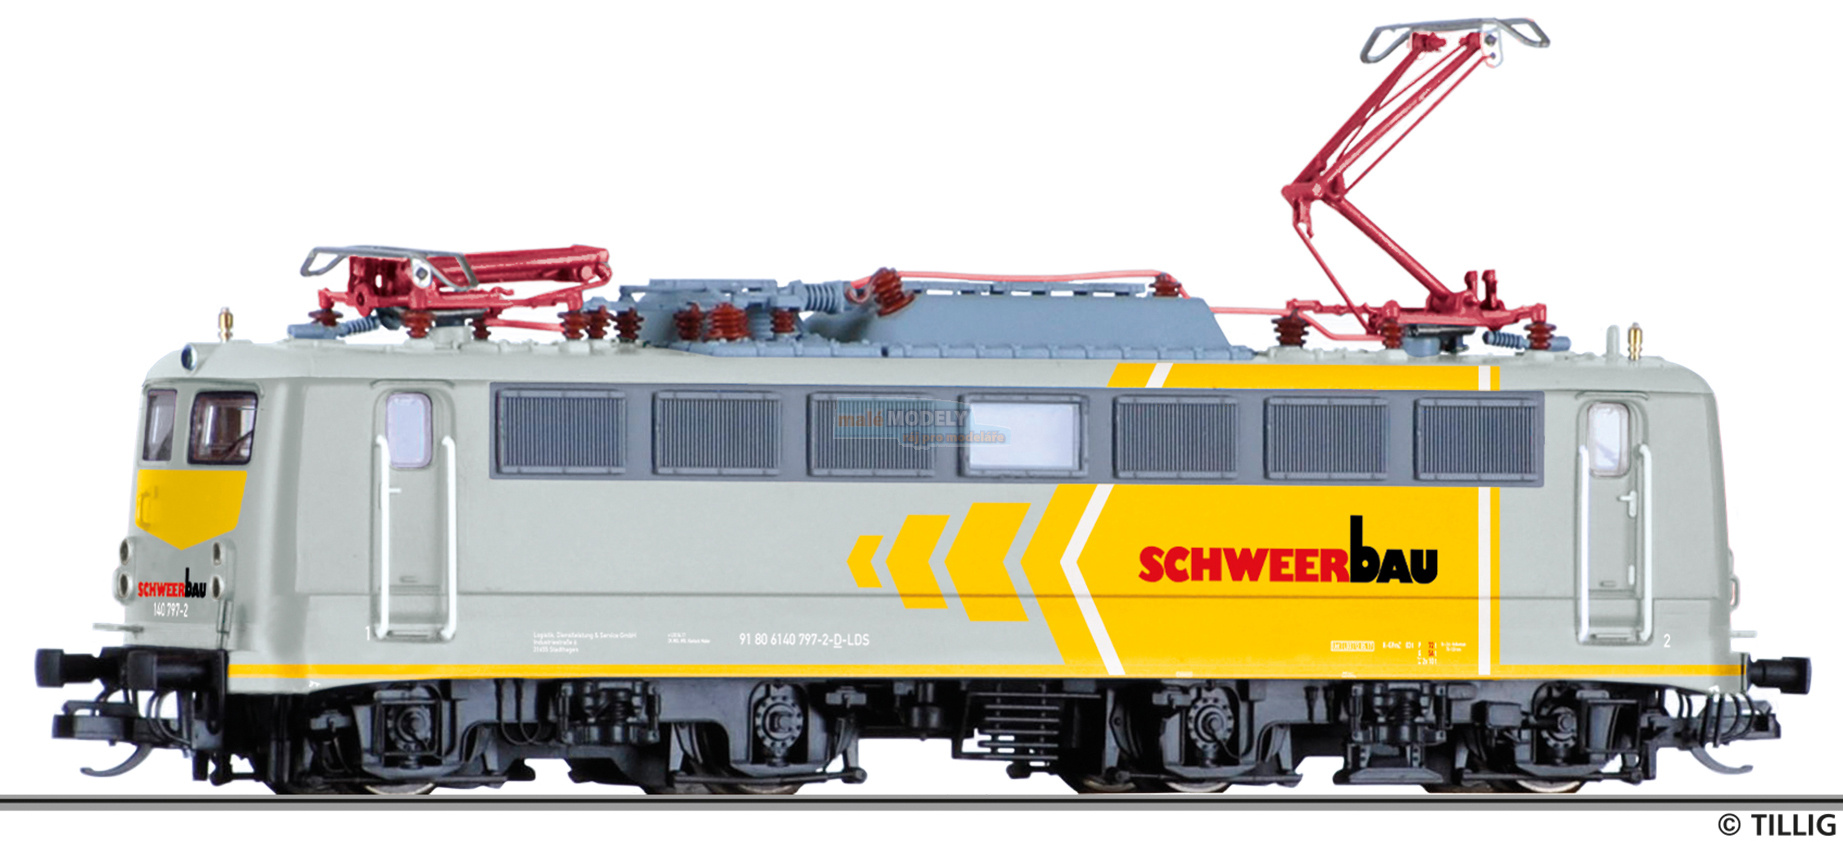 Elektrická lokomotiva 140 797-2, LDS GmbH, vermietet an die Schweerbau GmbH & Co. KG